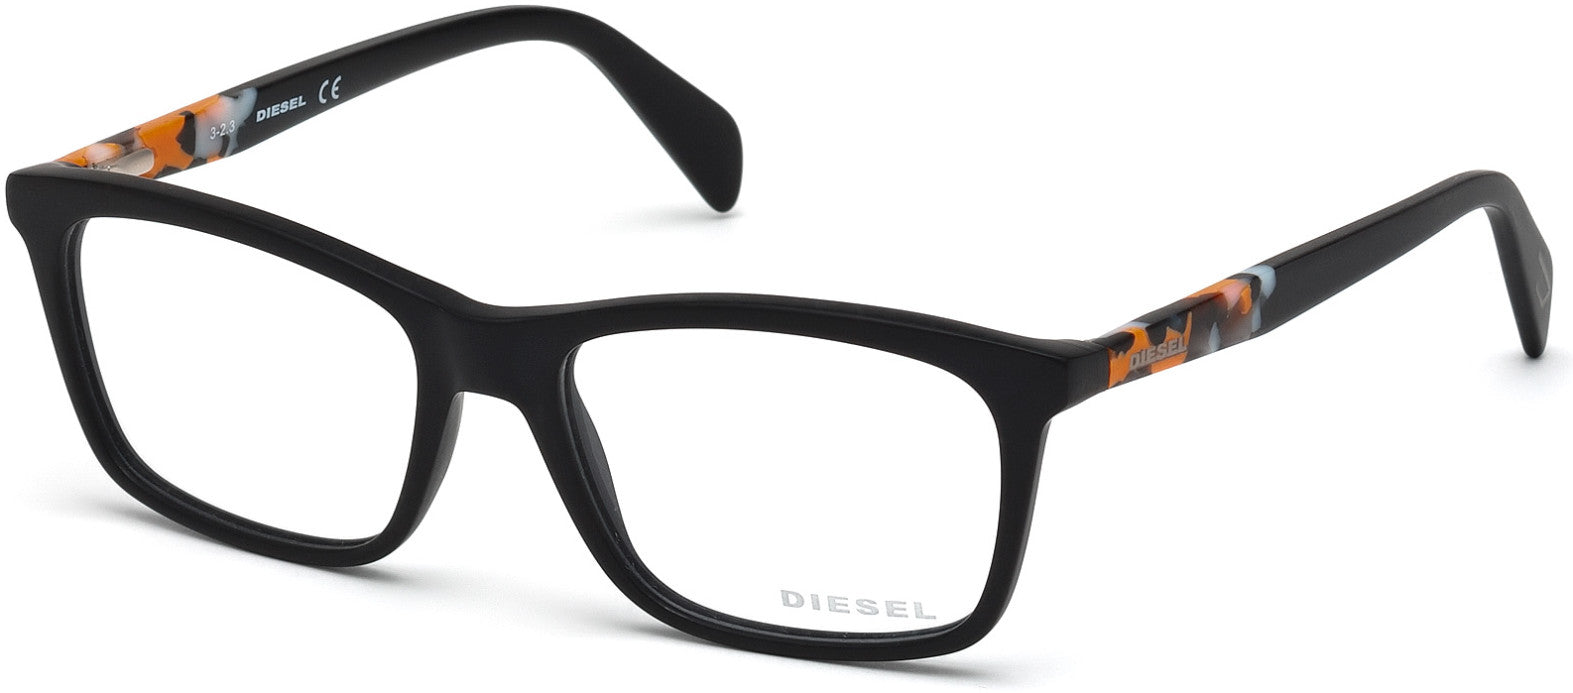 Diesel DL5089 Geometric Eyeglasses 002-002 - Matte Black